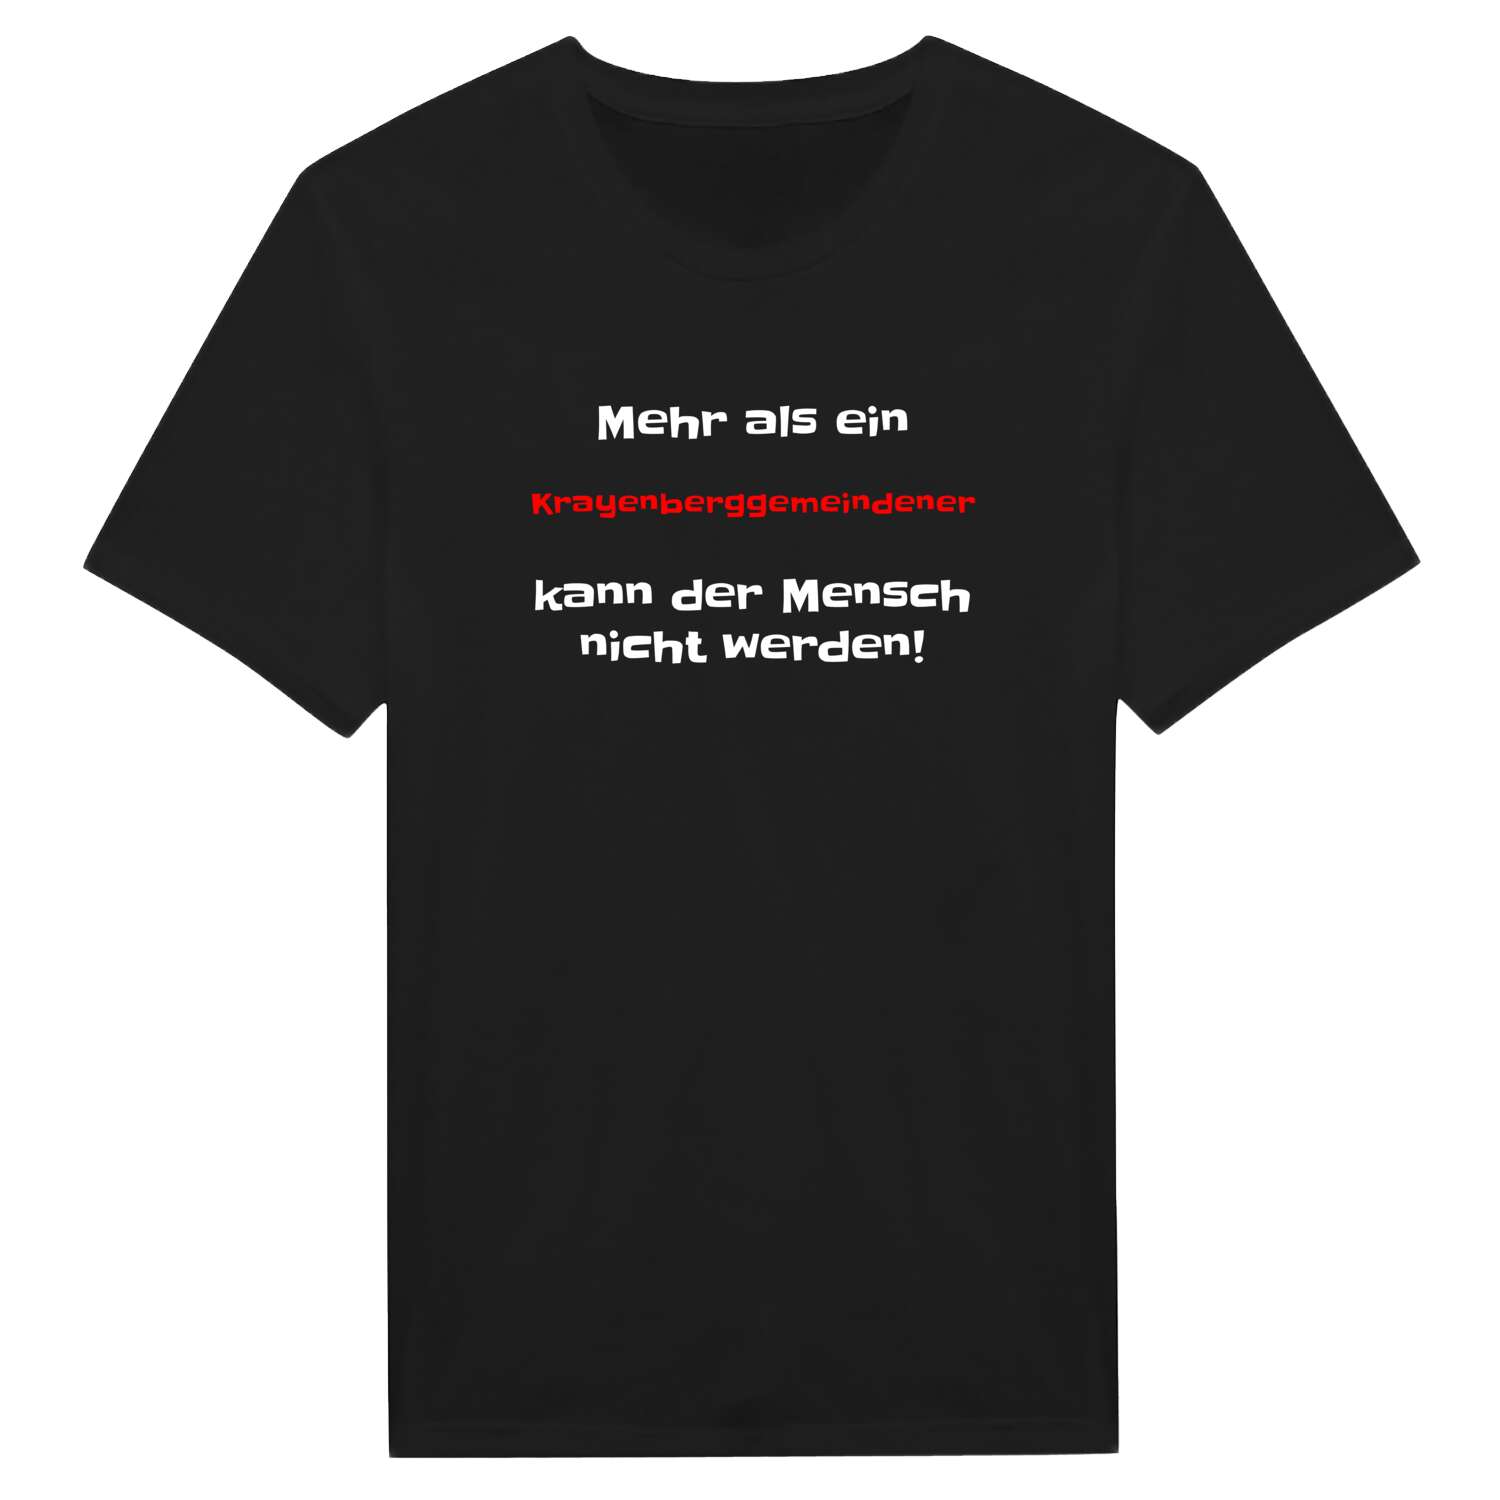 Krayenberggemeinde T-Shirt »Mehr als ein«